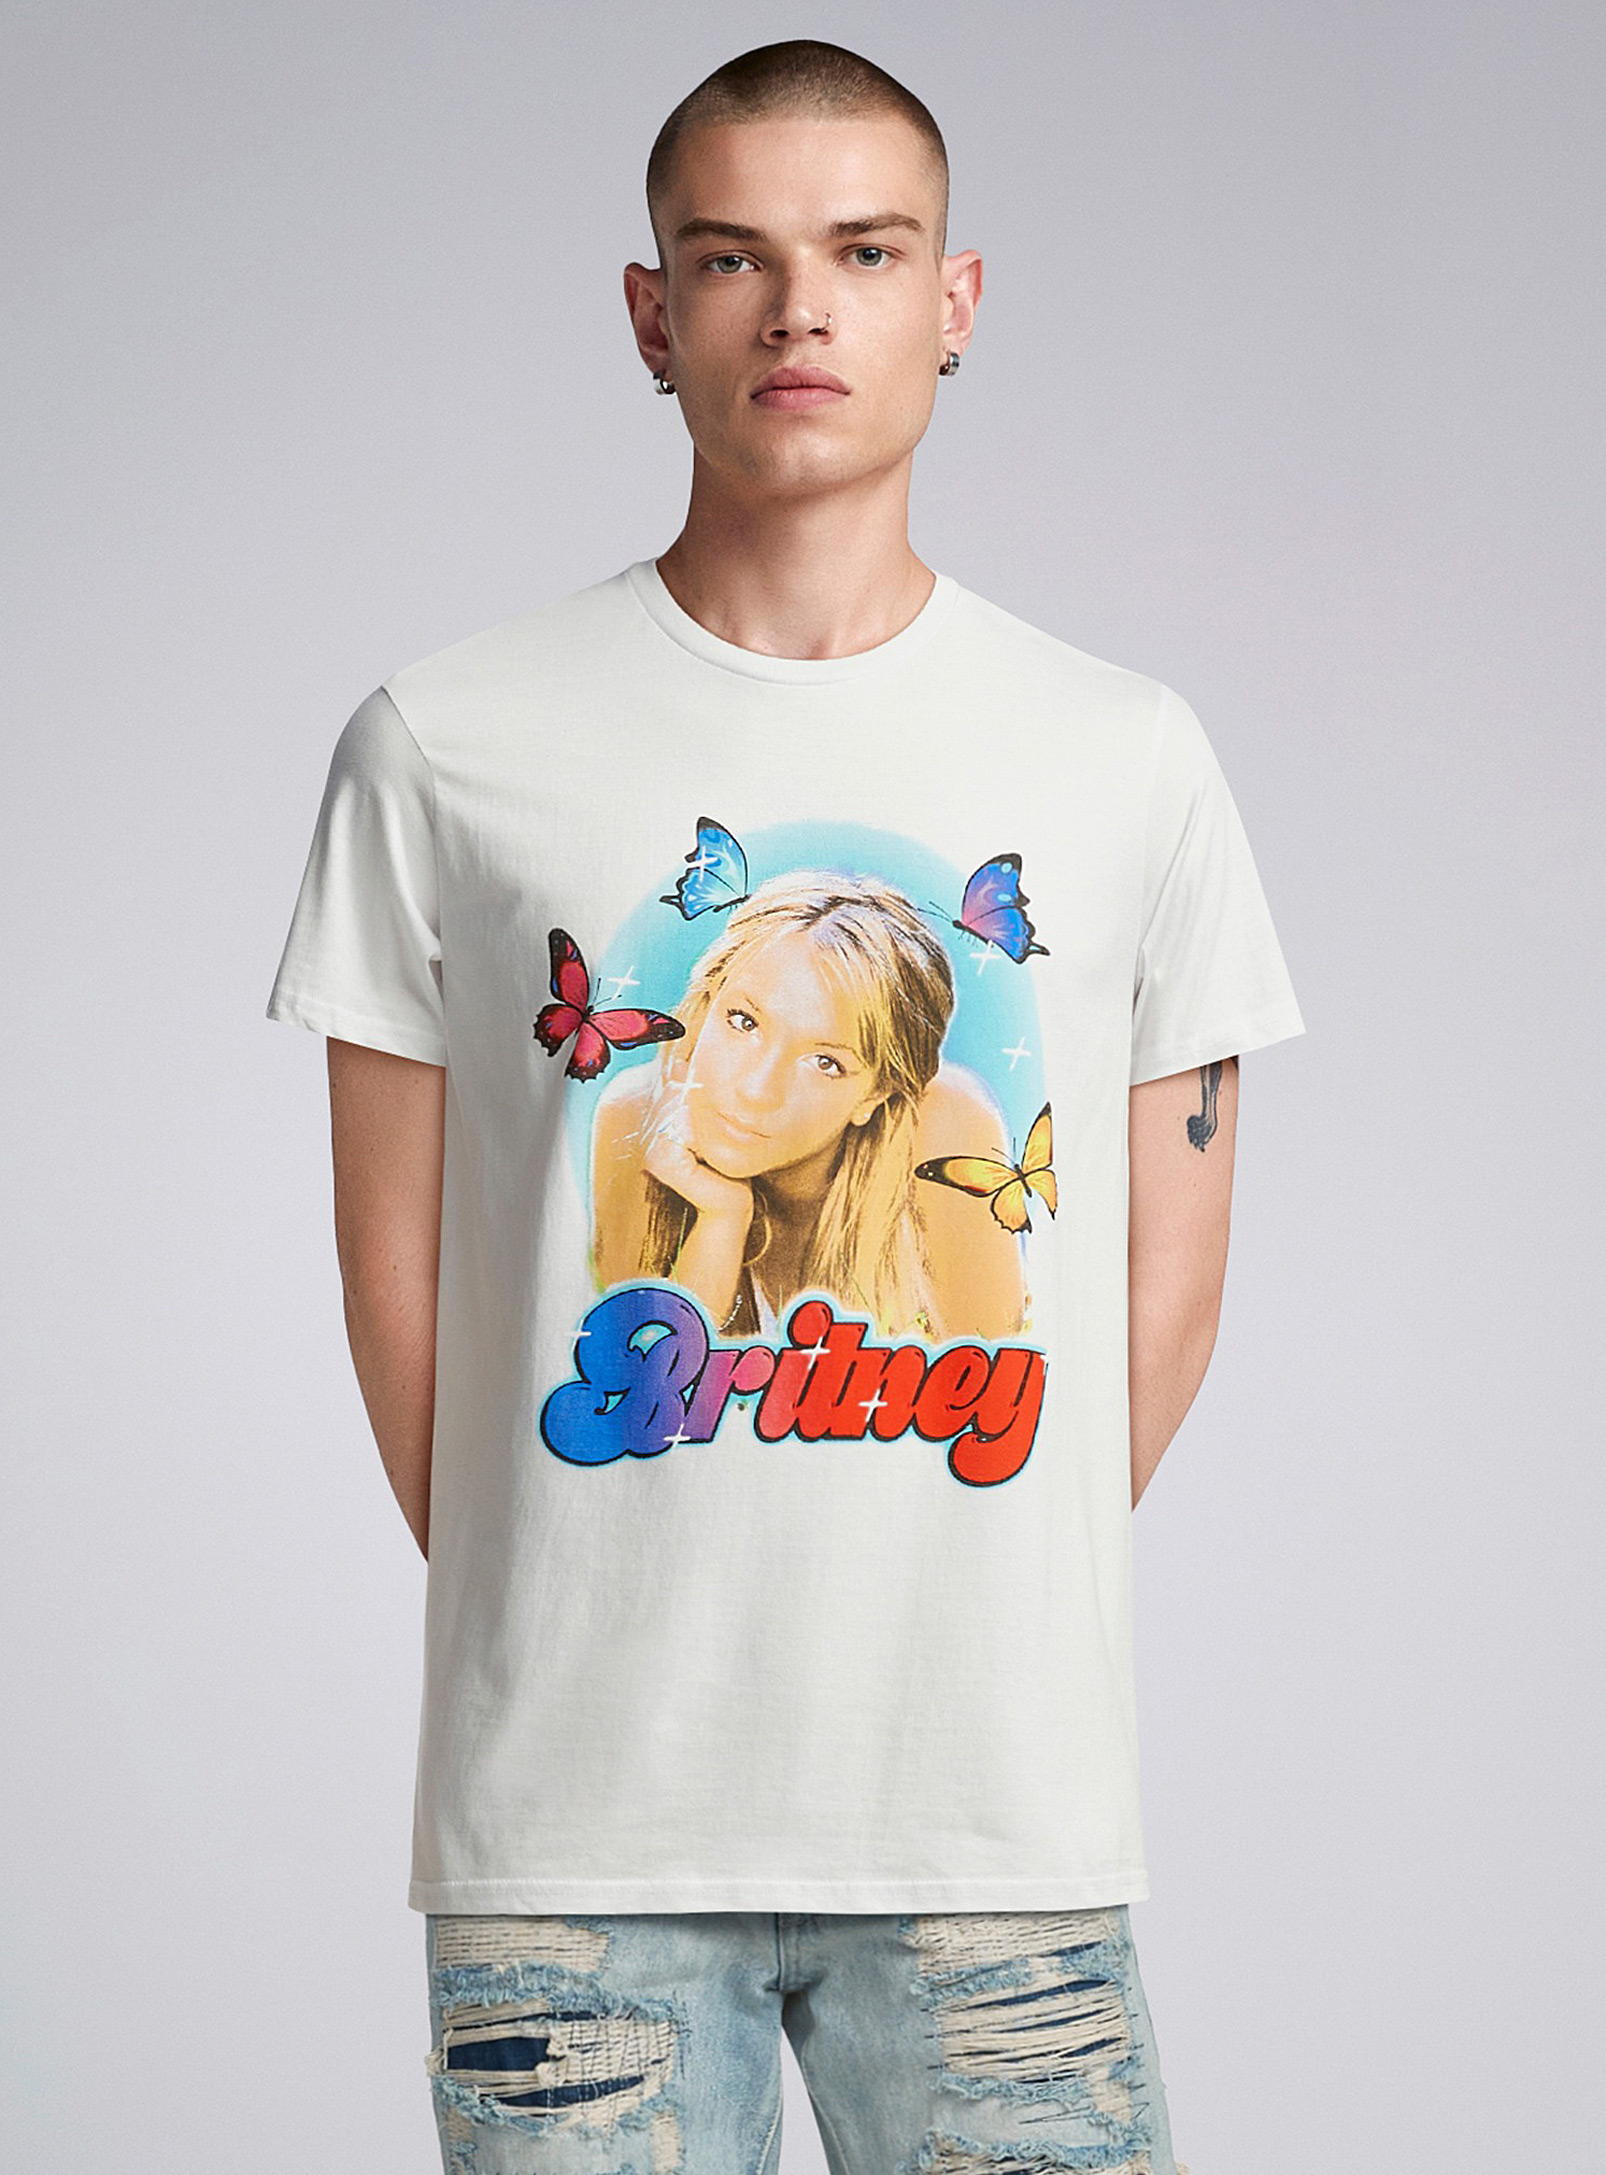 Djab - Le t-shirt Britney